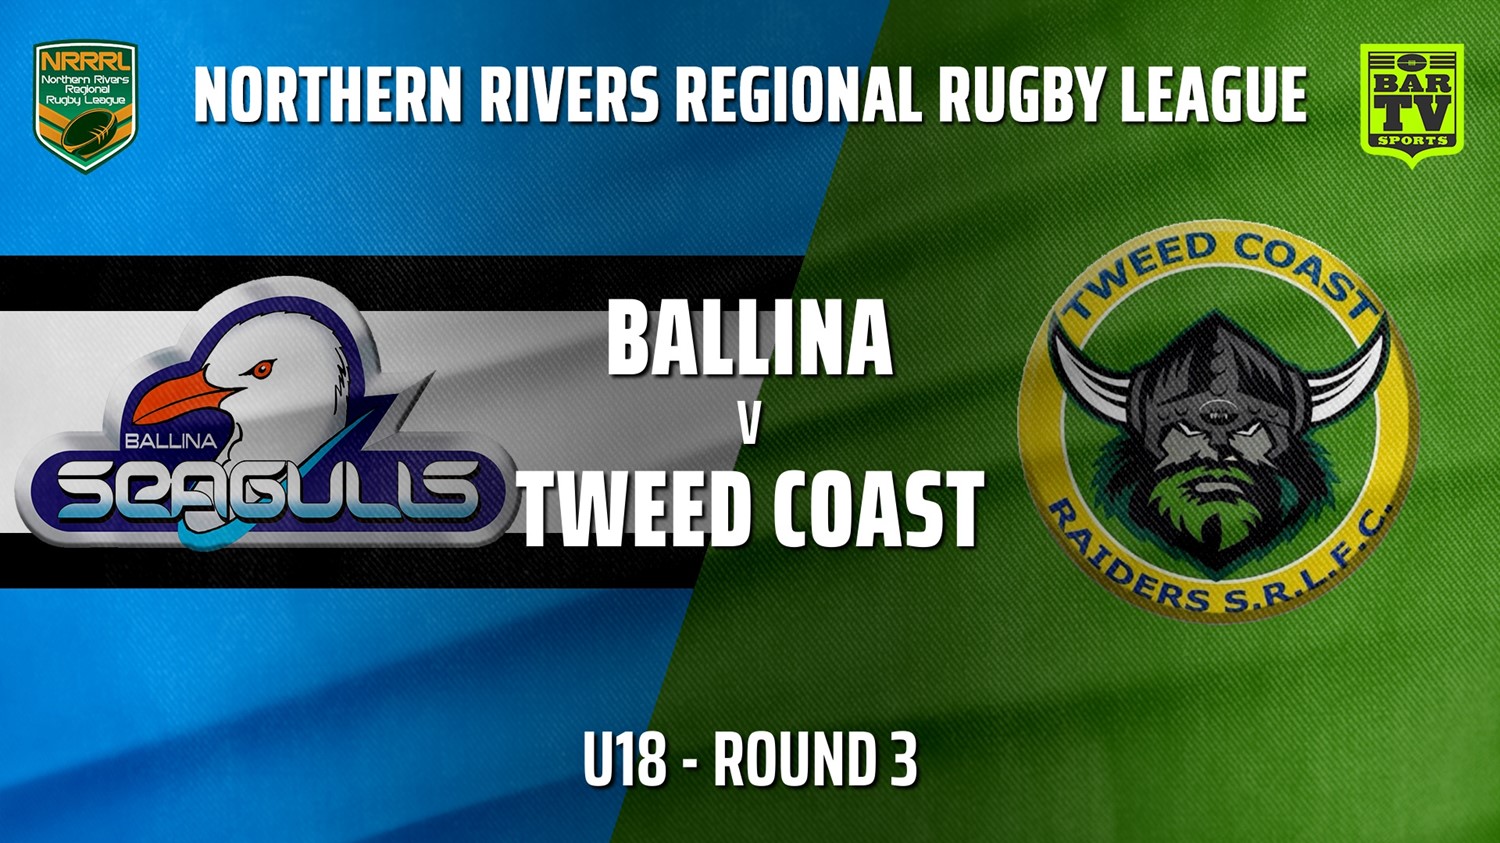 210516-NRRRL Round 3 - U18 - Ballina Seagulls v Tweed Coast Raiders (1) Slate Image